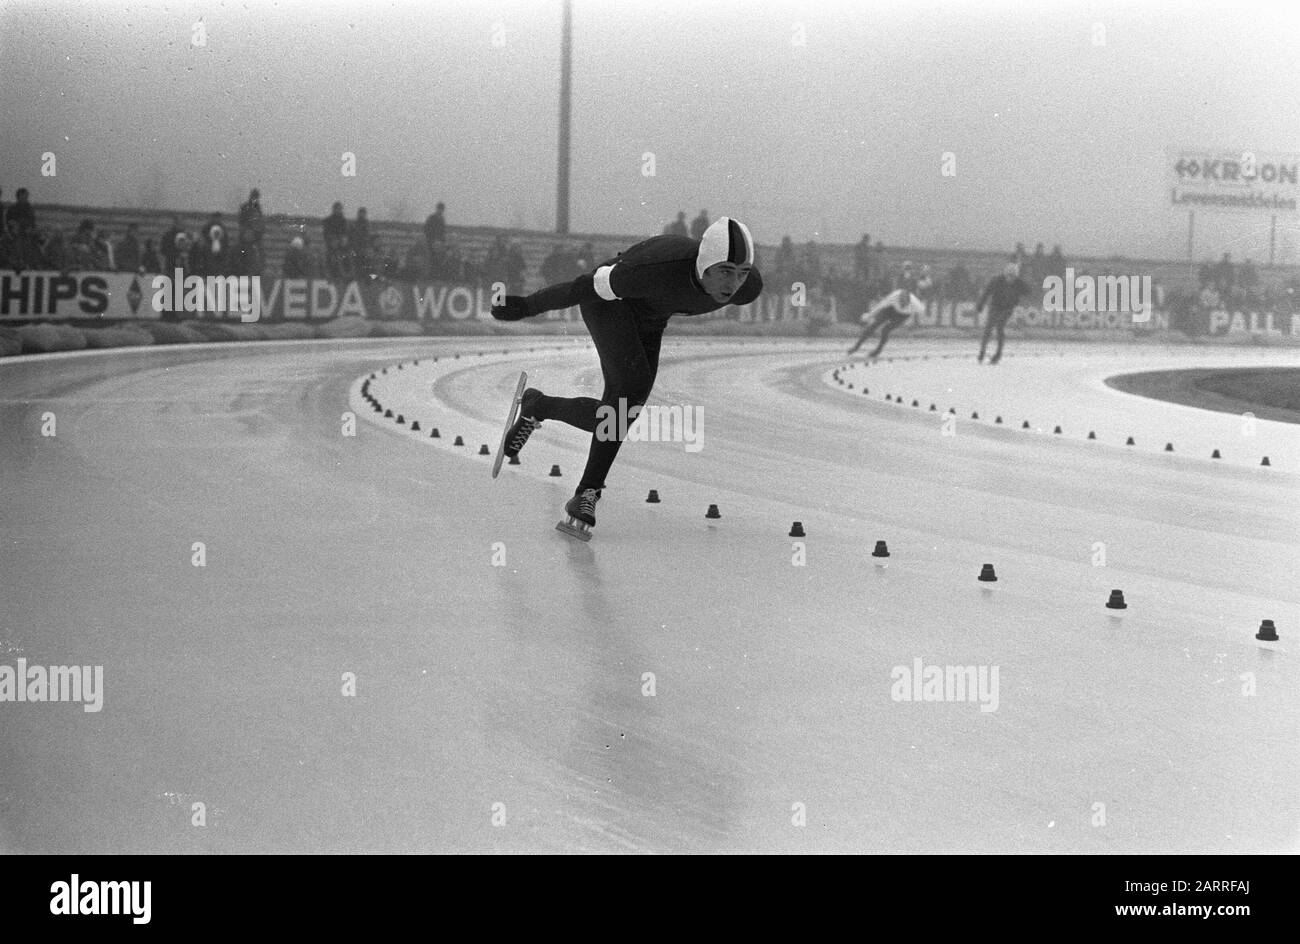 Ice skating competitions in Heerenveen om Gouden Skate, Erhard Keller in action Date: 18 December 1971 Location: Friesland, Heerenveen Keywords: RATES, skating, sport Person name: Erhard Keller Stock Photo